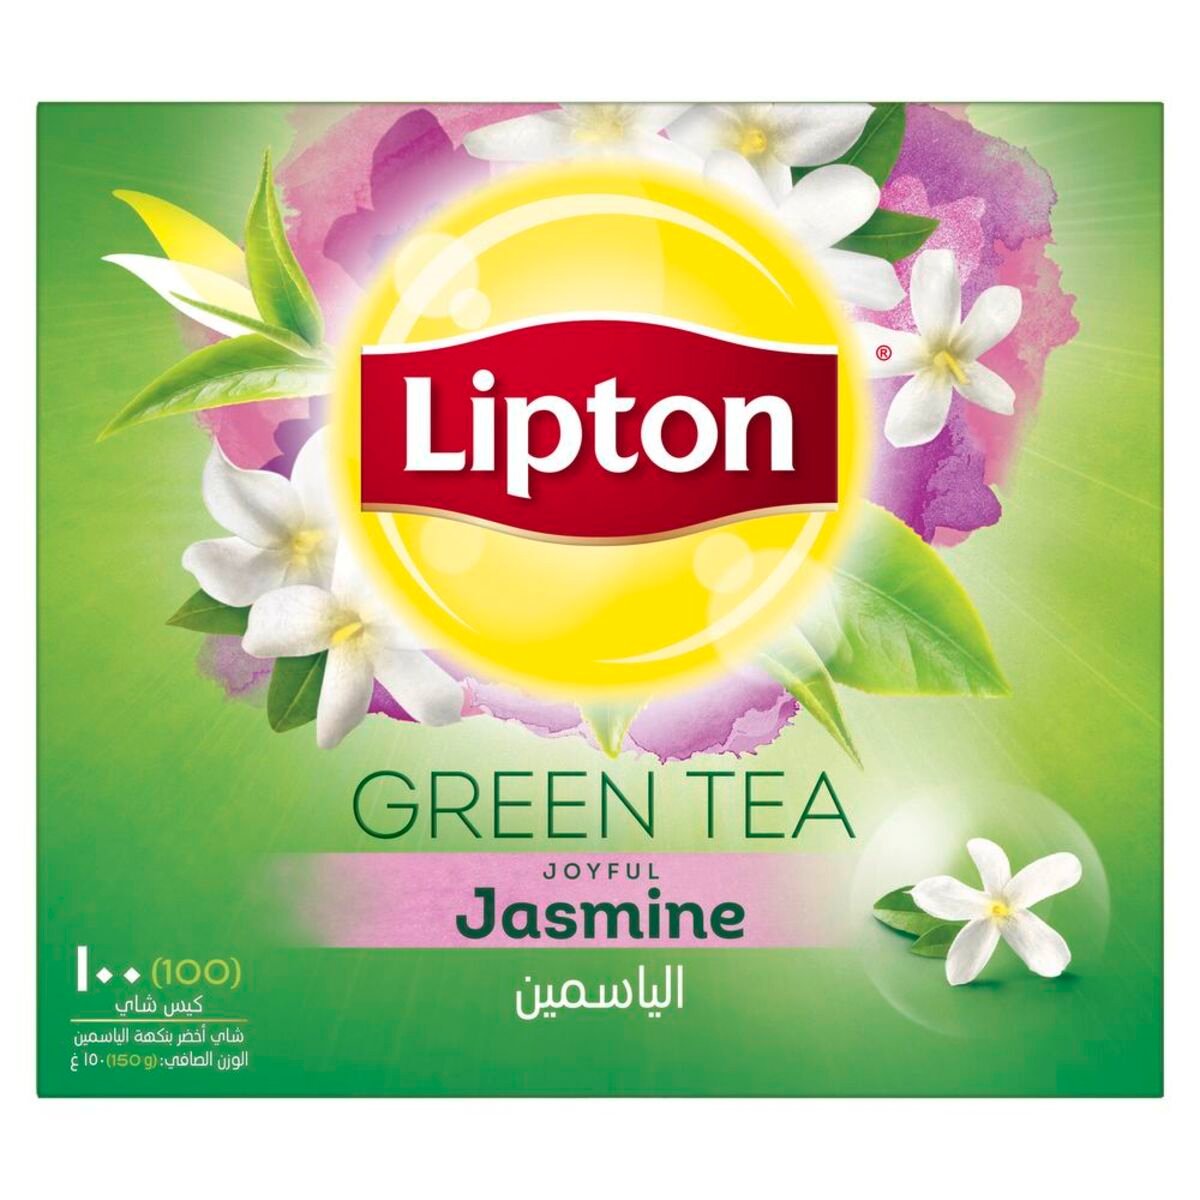 Lipton Green Tea Jasmine 100 Teabags